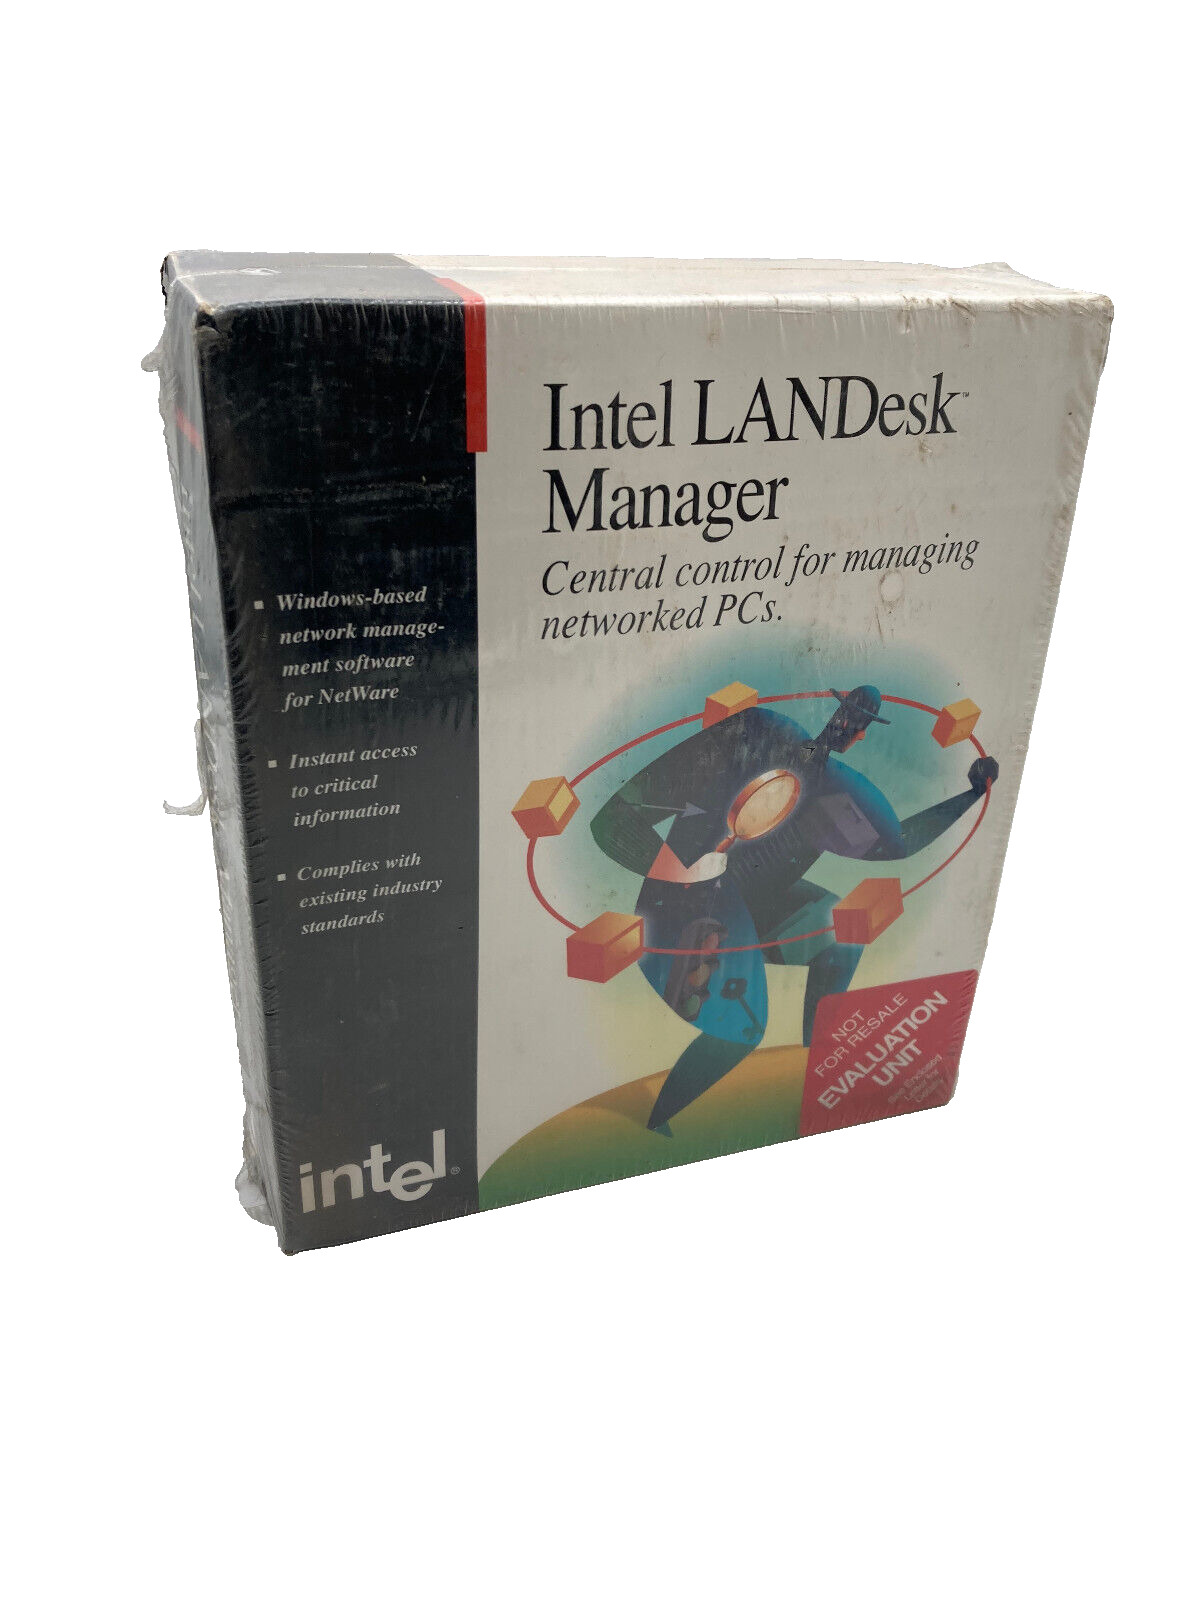 NEW/NOS INTEL LANDesk Manager V1.51 Software NIB Sealed Vintage 1994